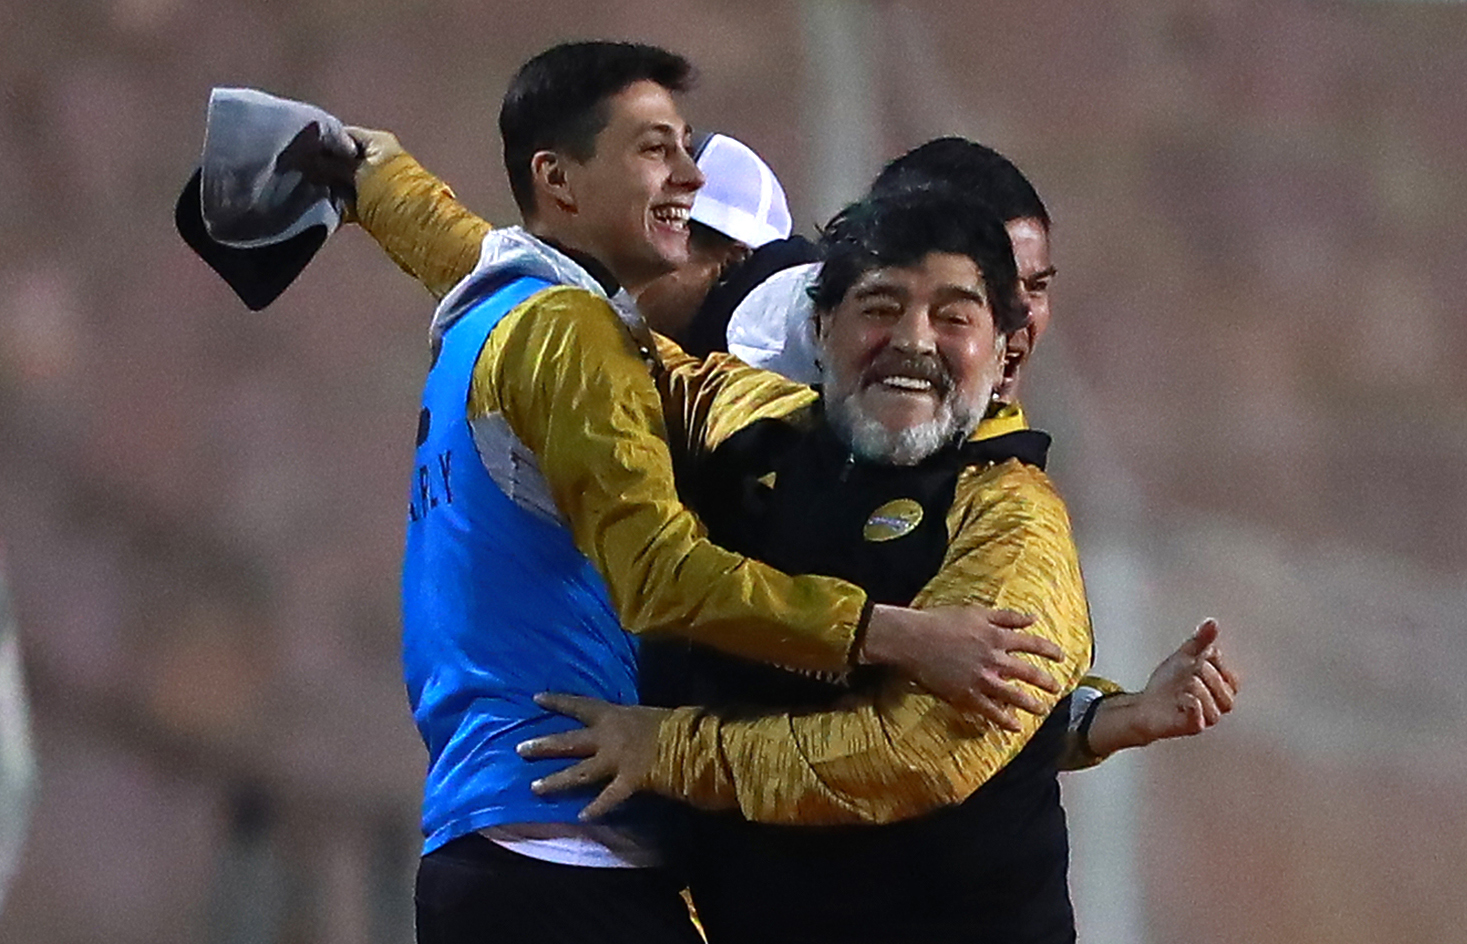 Islas destaca la cercanía y humildad de Maradona con los jugadores. Héctor Vivas/Getty Images